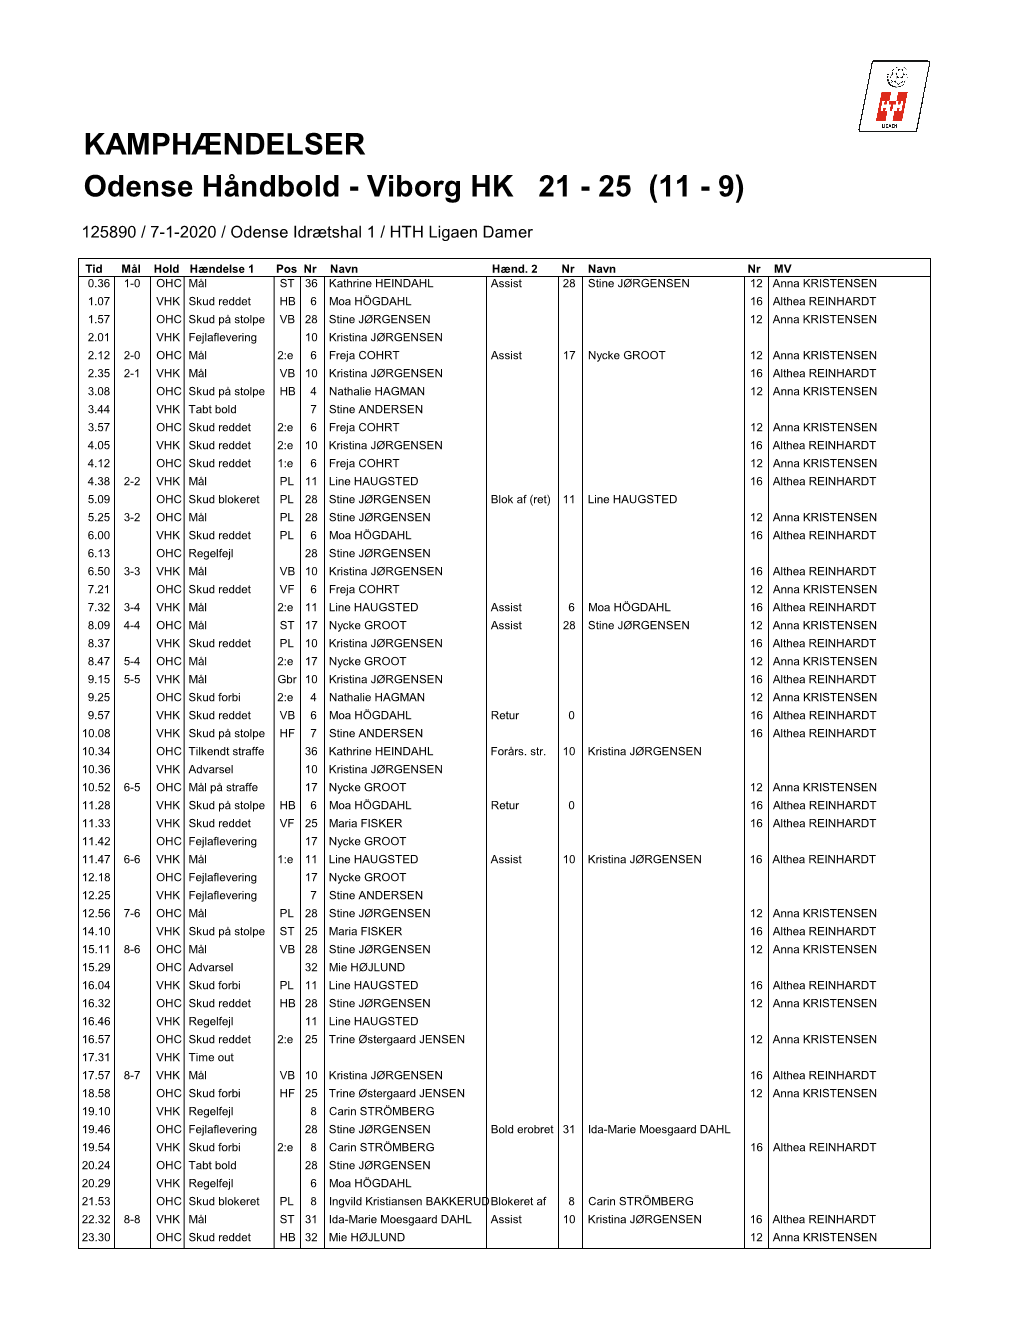 KAMPHÆNDELSER Odense Håndbold - Viborg HK 21 - 25 (11 - 9)